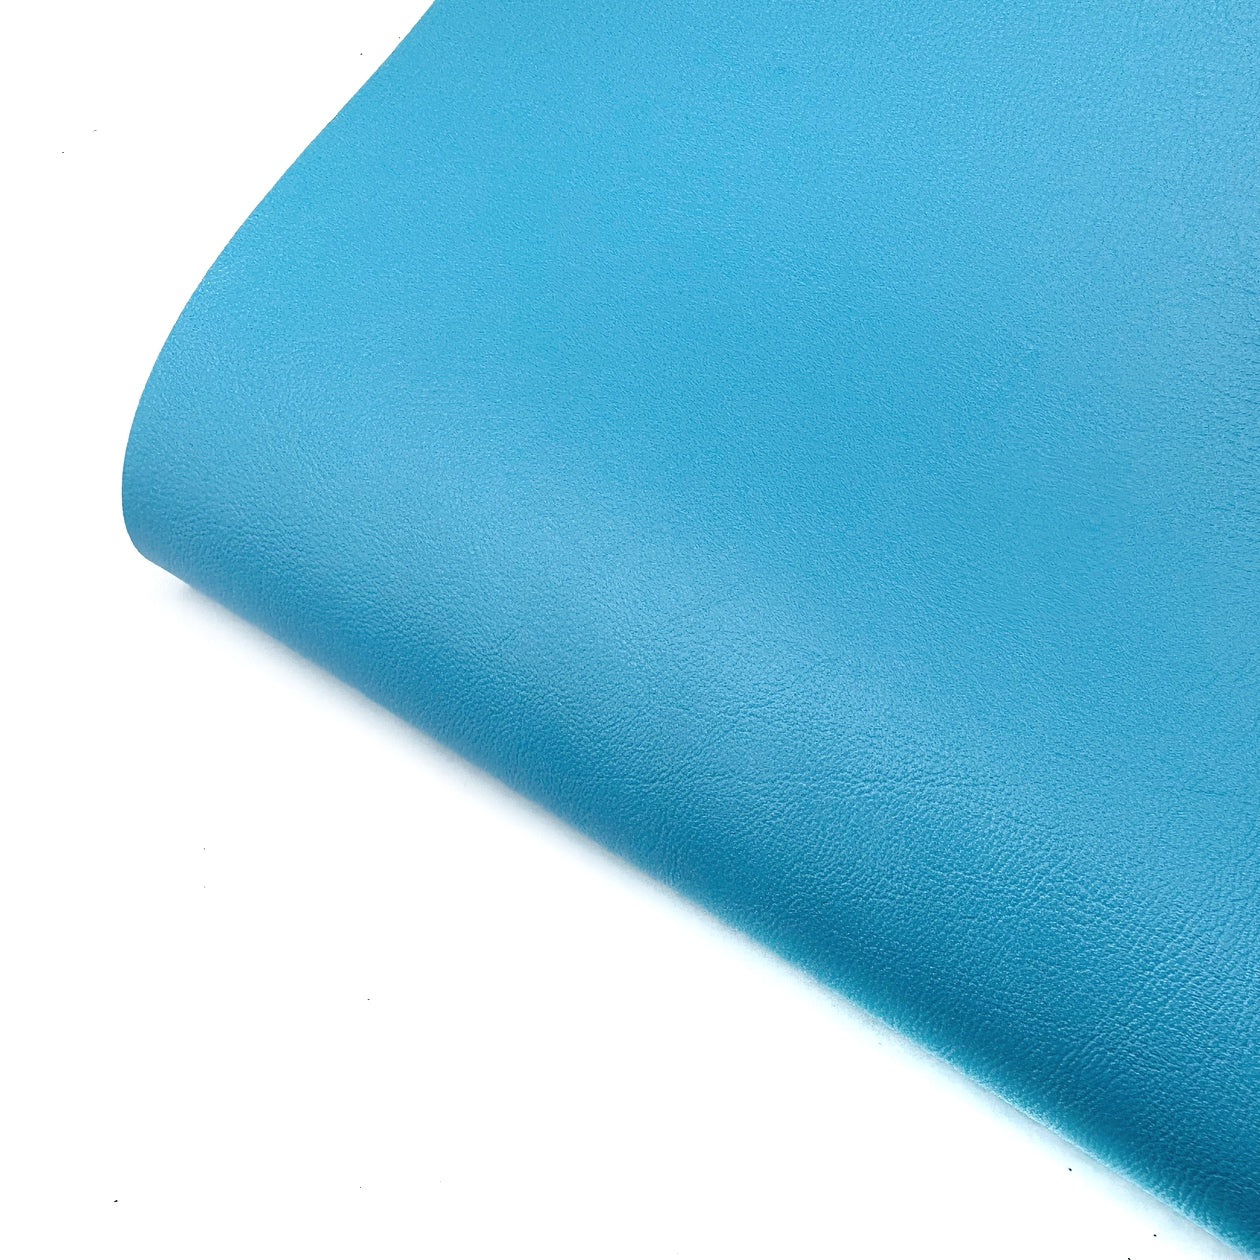 Sea life Core Colour Premium Faux Leather Fabric Sheets